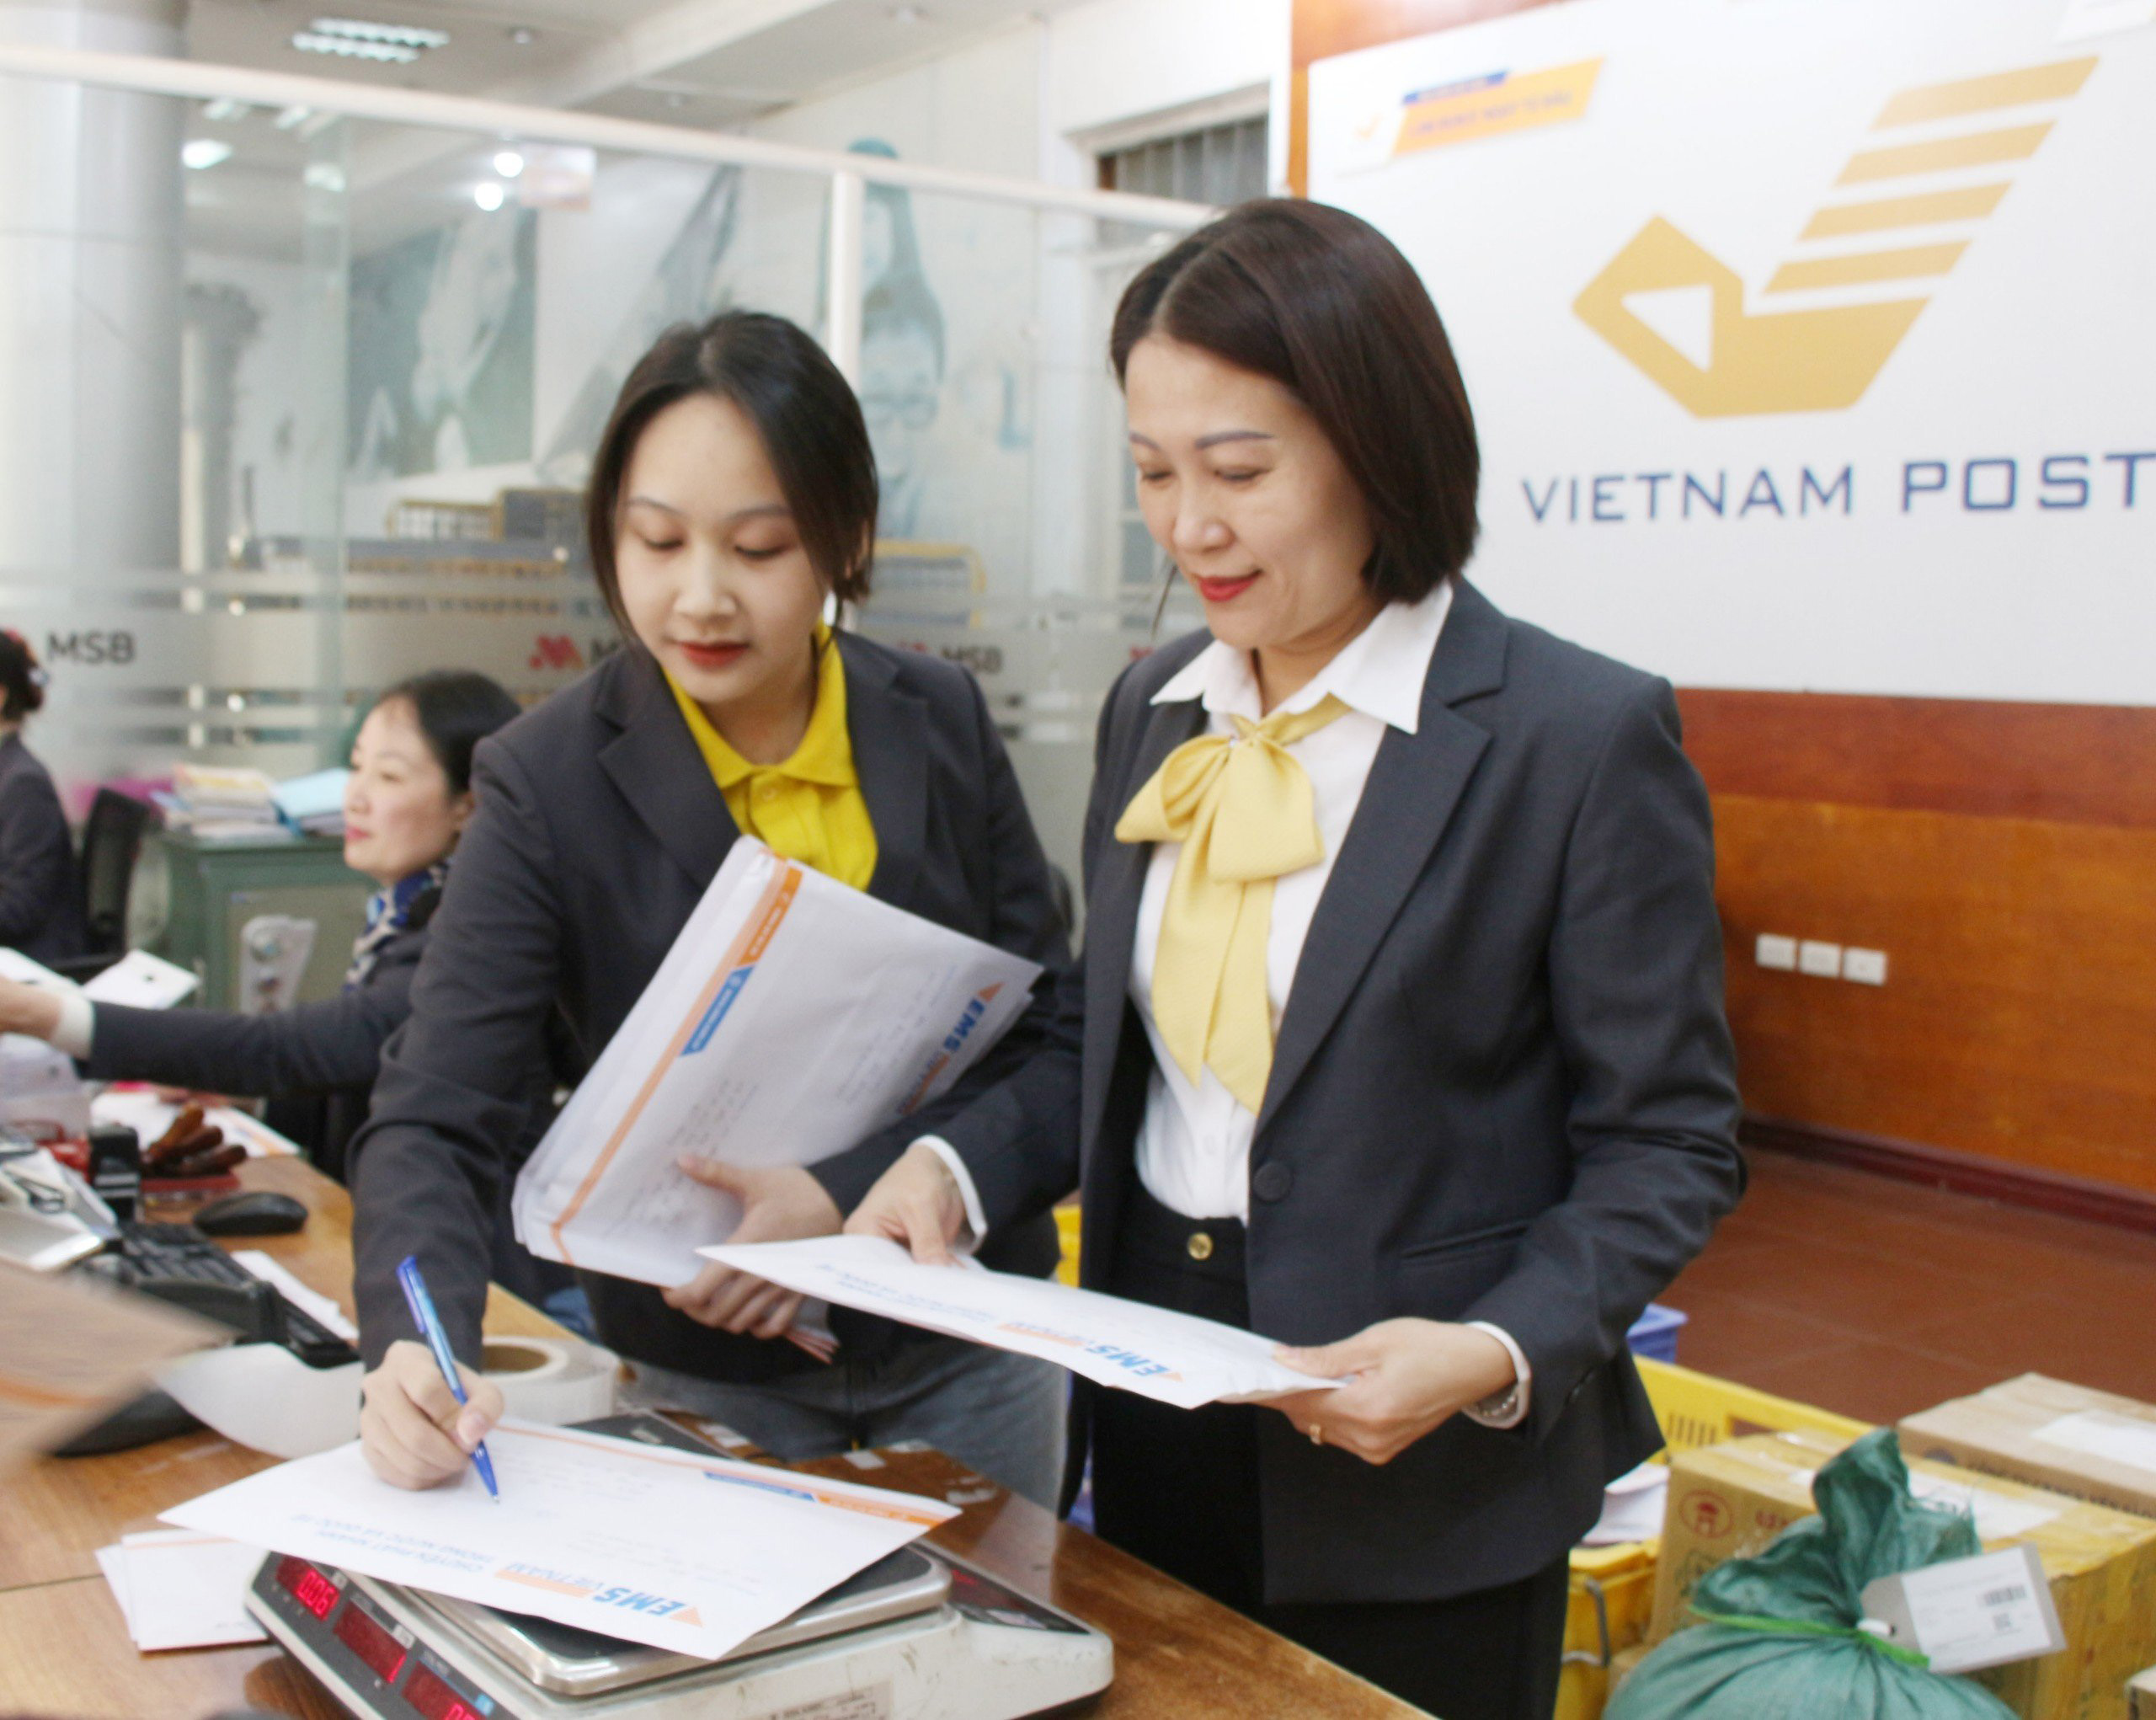 Bưu điện tỉnh Bắc Giang: Bước tiến nhờ nâng cao chất lượng dịch vụ, phục vụ